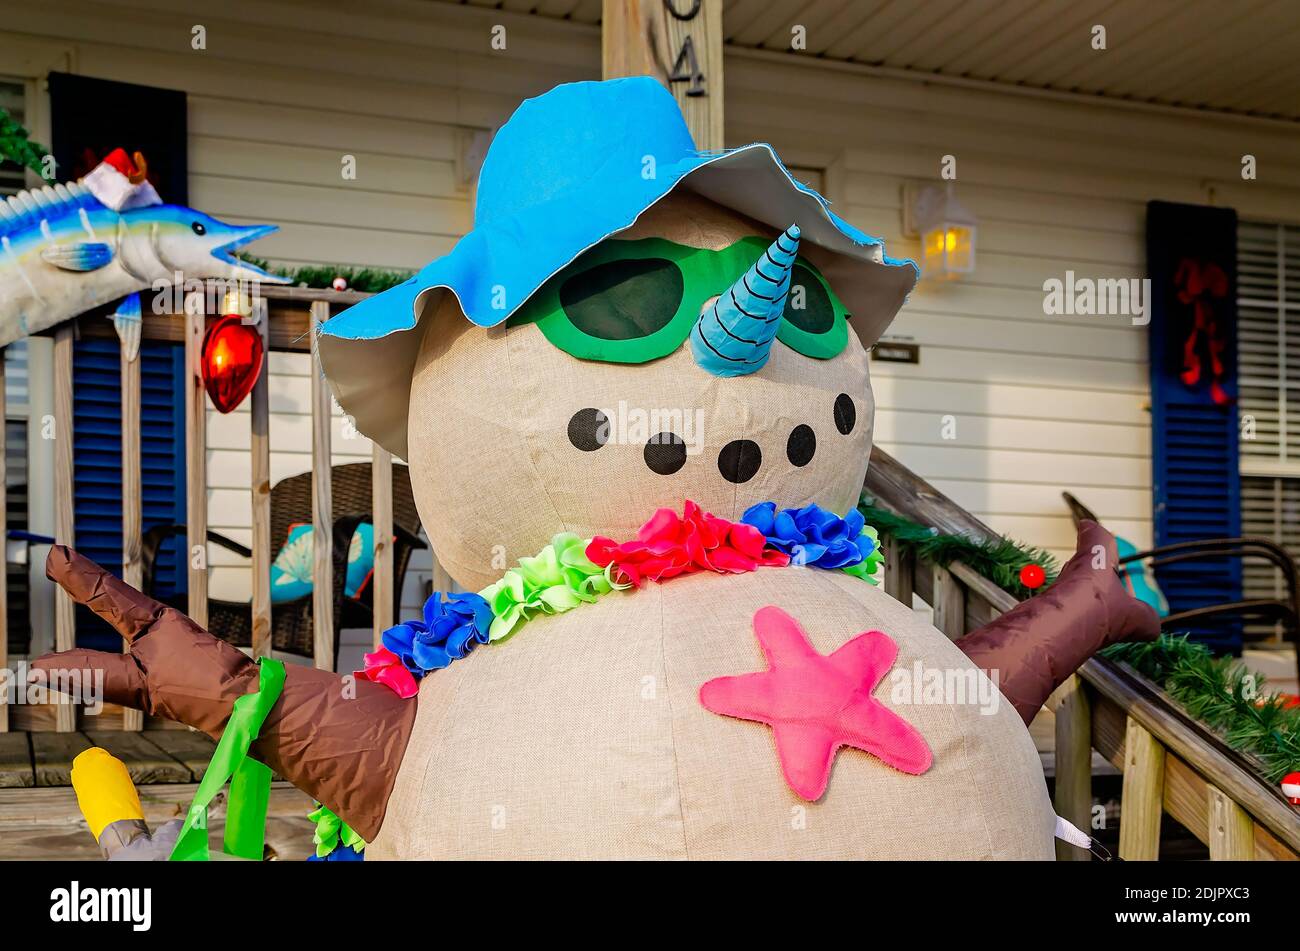 Une entreprise locale présente une décoration de Noël gonflable bonhomme de neige sur la plage, le 13 décembre 2020, à Dauphin Island, Alabama. Banque D'Images